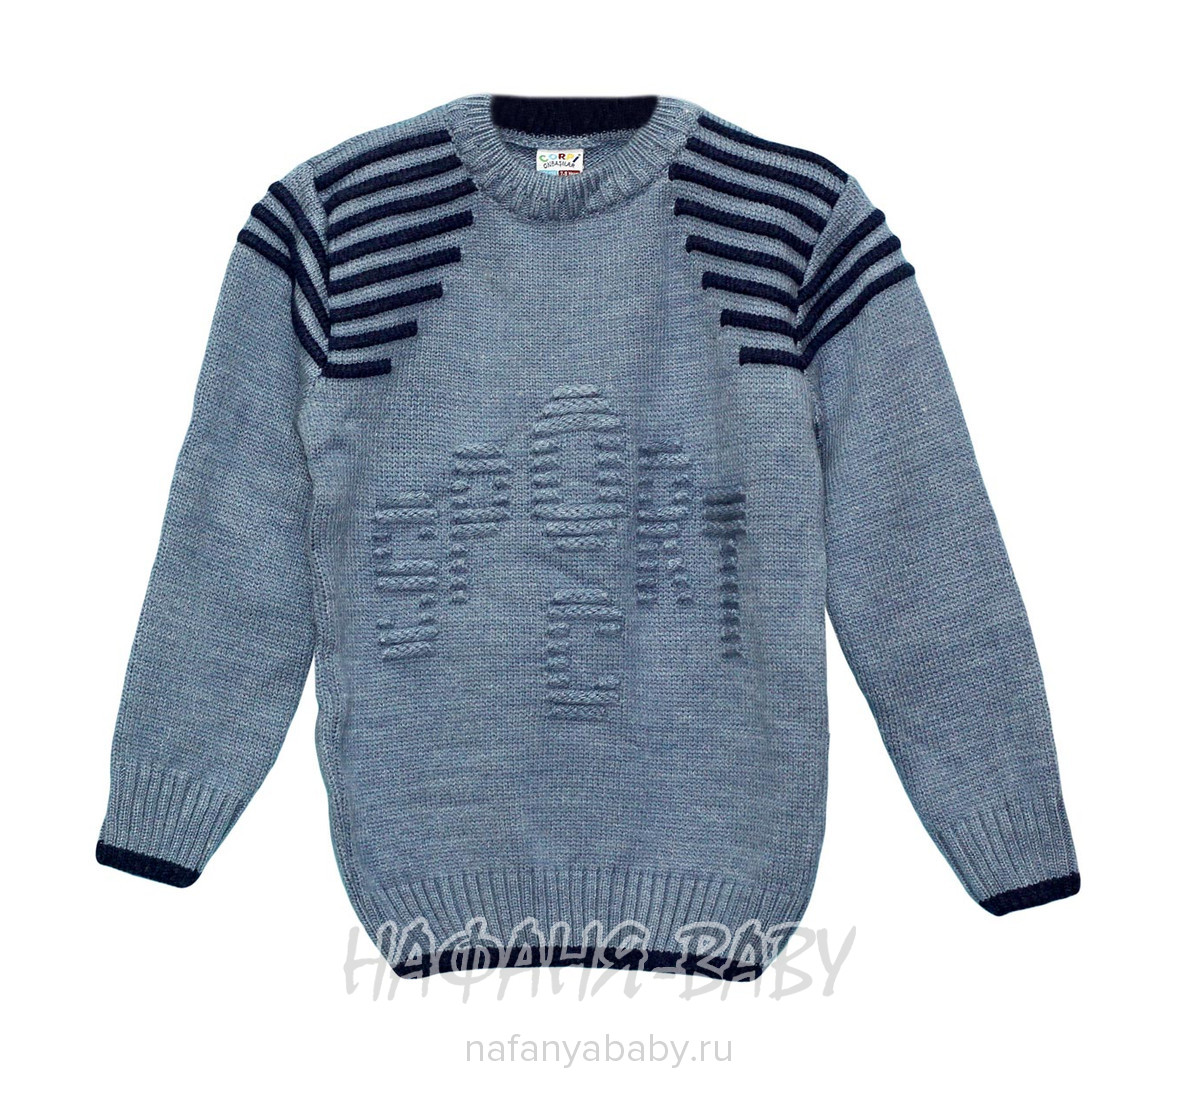 Вязанный джемпер для мальчика CORPI арт: 3103, 5-9 лет, цвет серо-голубой, оптом Турция